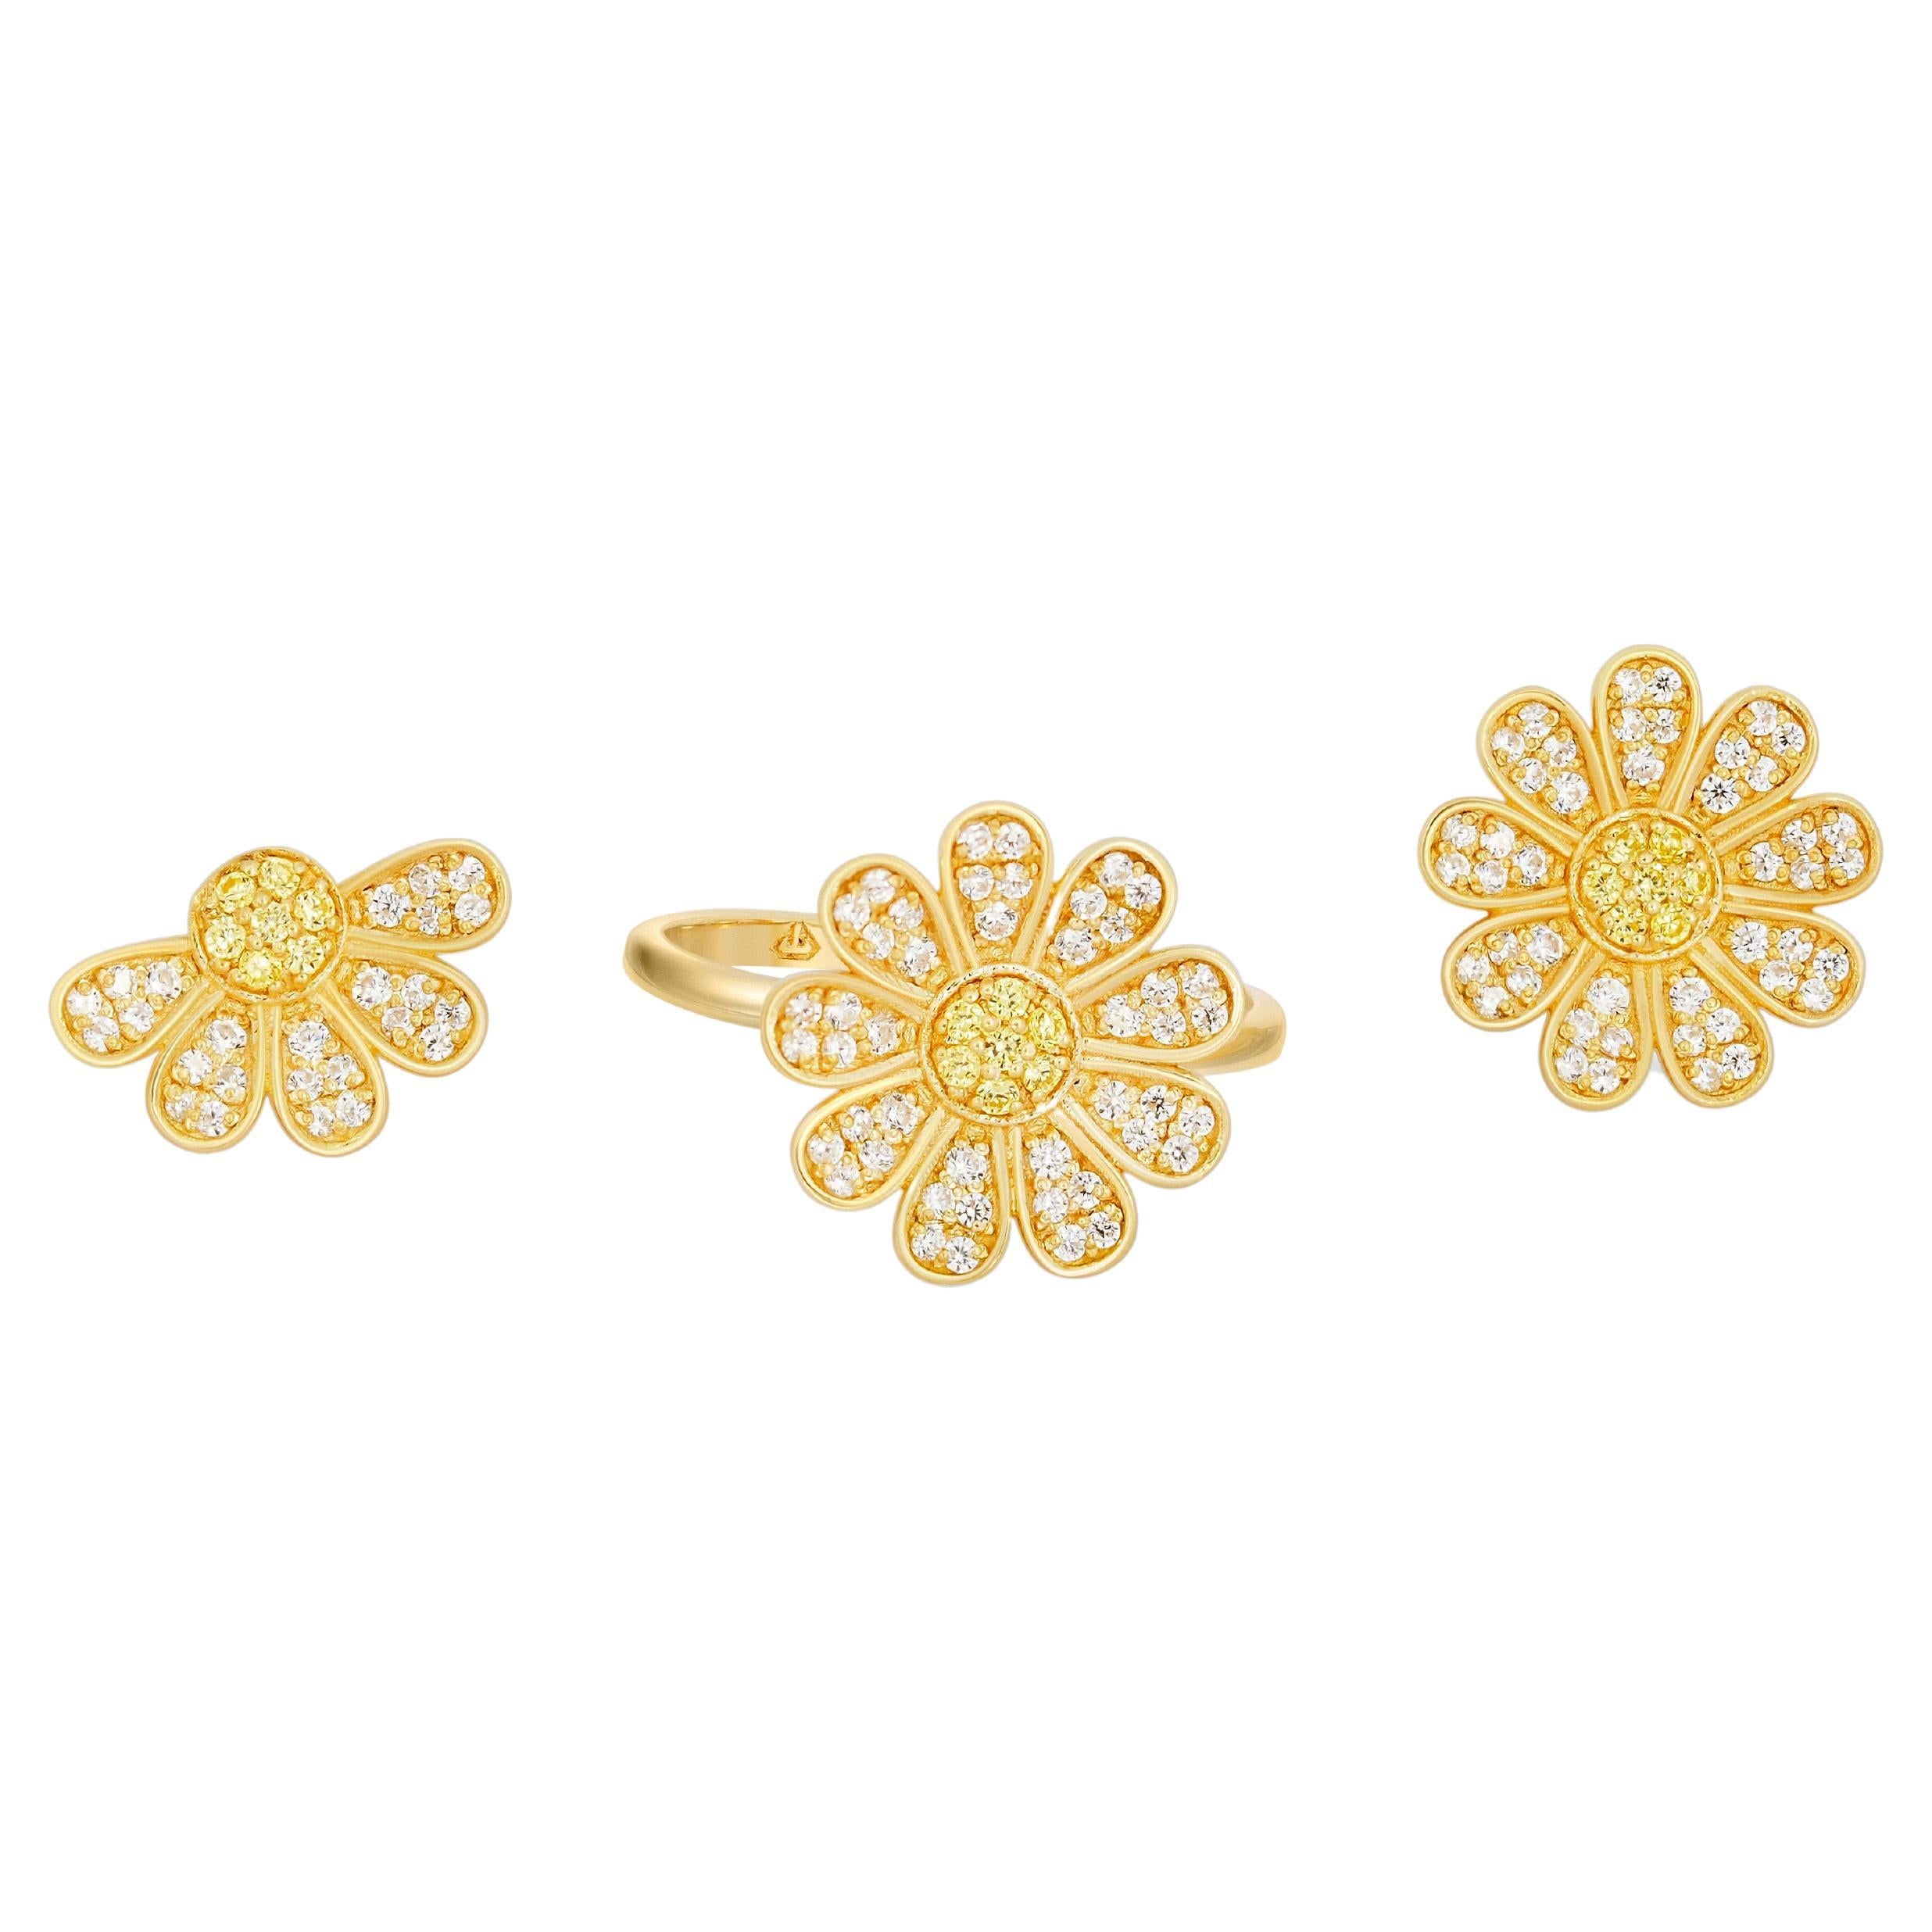 Daisy flower 14k gold ring and earrings set 